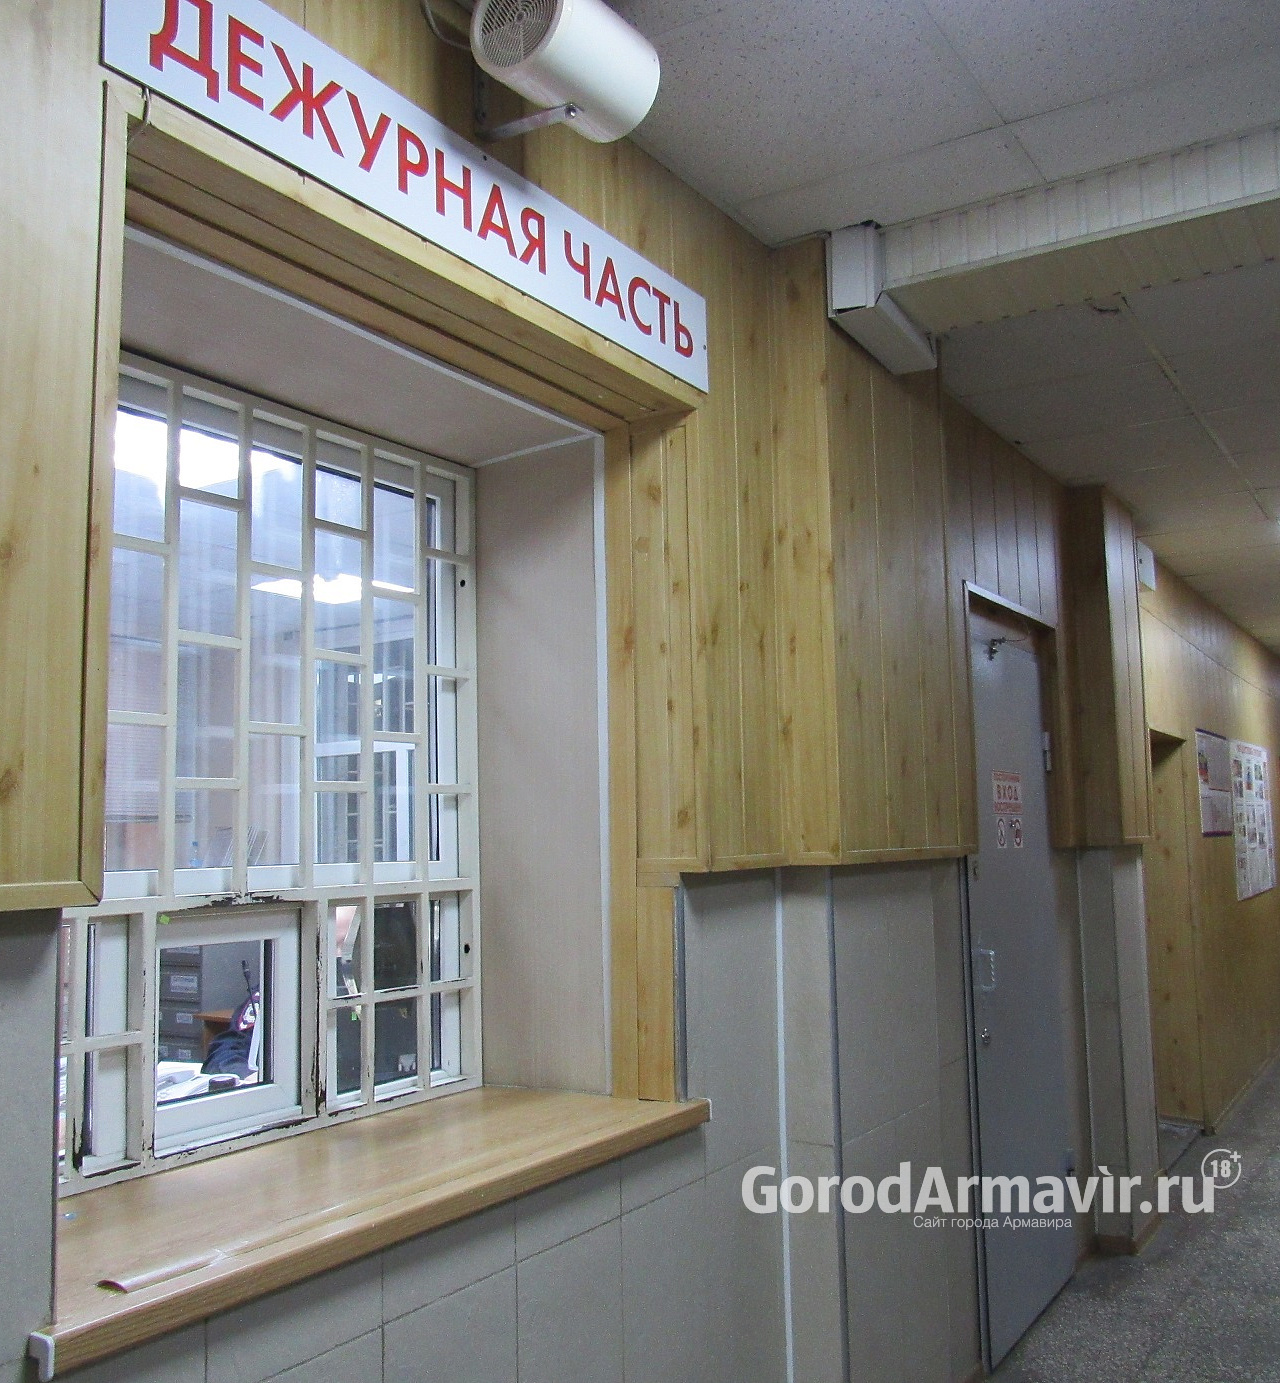 В Армавире водитель вуза подделал гостиничные счета и чеки на сумму в 67 тыс руб 